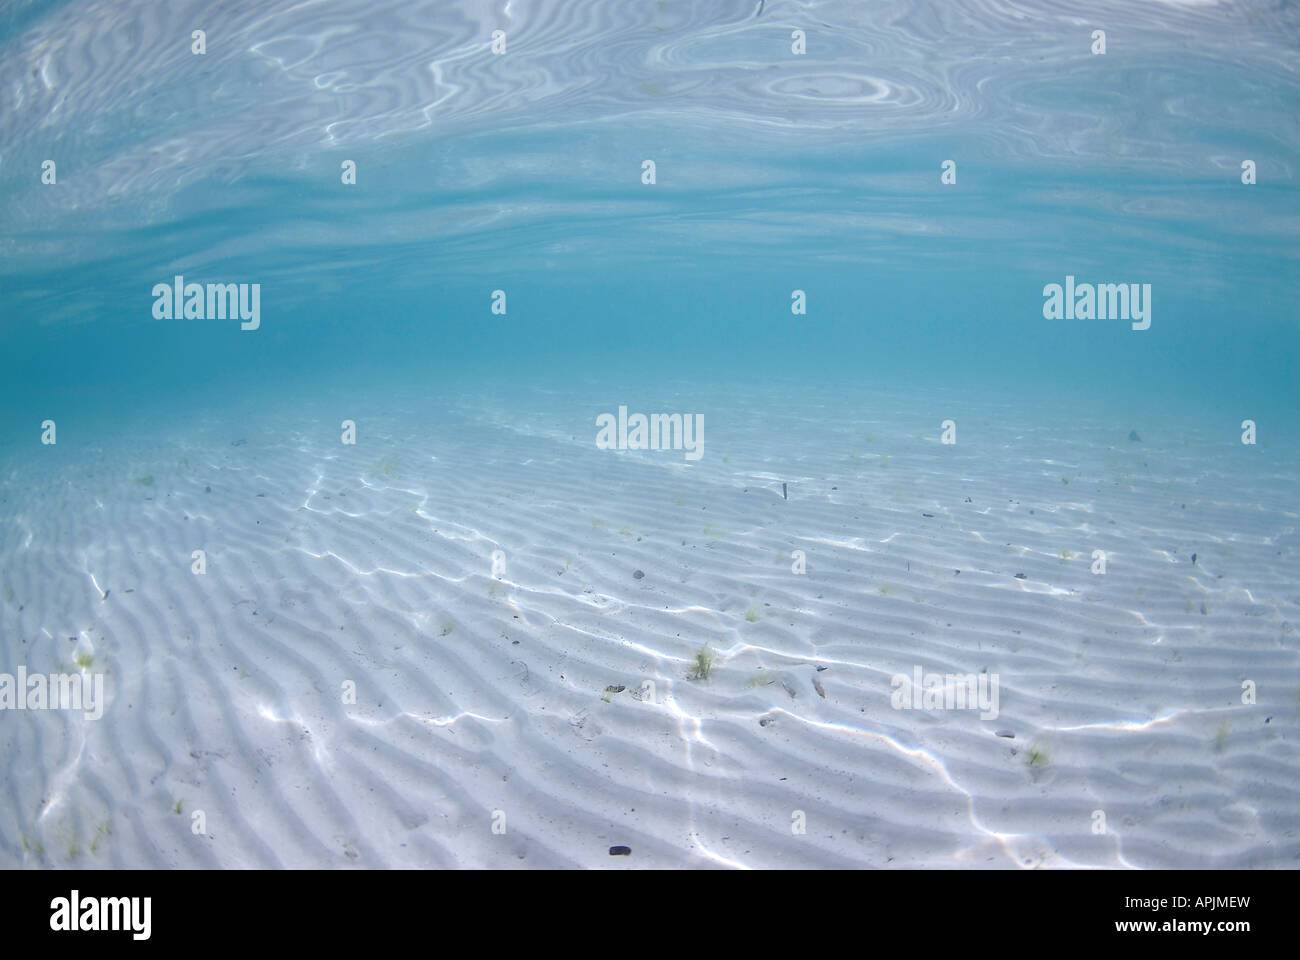 Vista submarina de ondulaciones de arena blanca limpia y bue Indonesia Raja Ampat Islas de agua Foto de stock